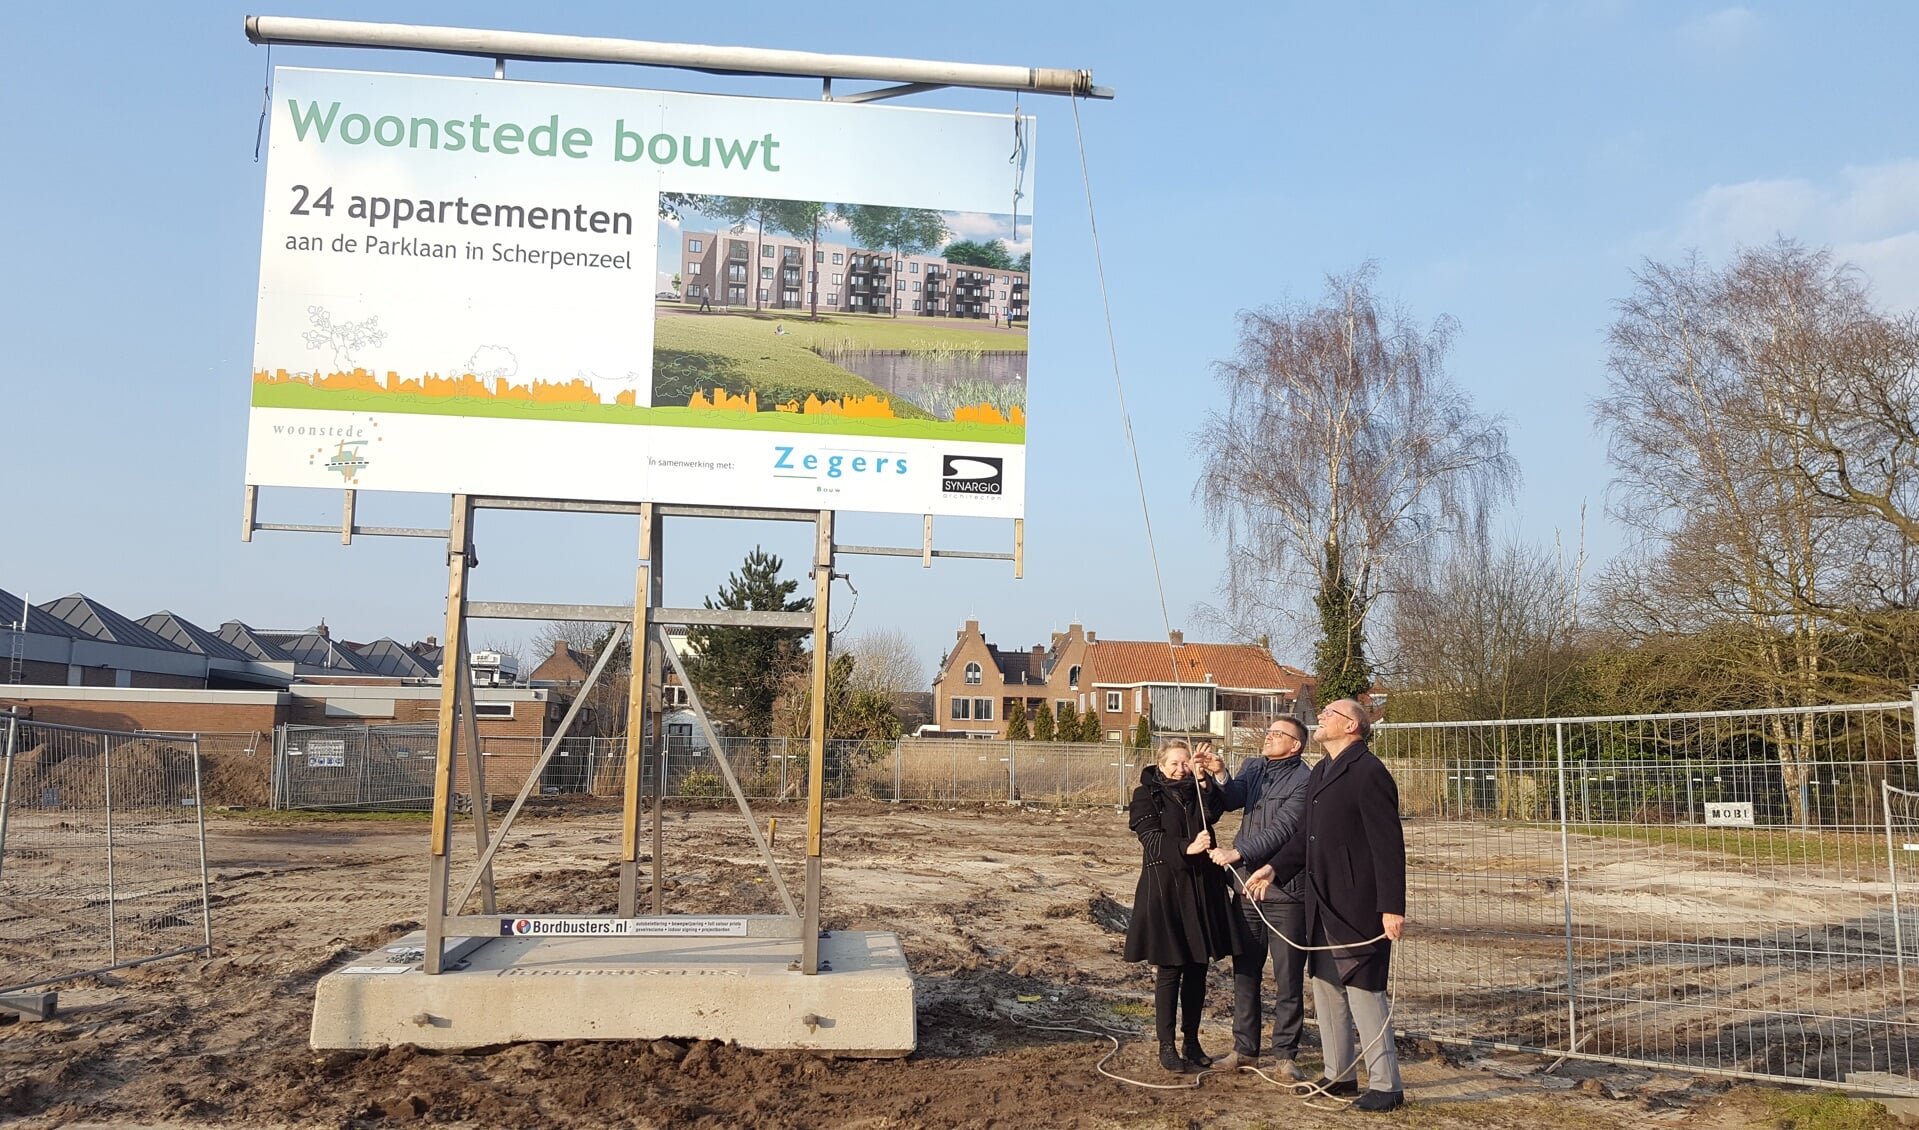 Woonstede-directeur Marian Teer en wethouder Tonnis van Dijk onthulden woensdag het bouwbord aan de Parklaan. Daar verrijzen nog voor het eind van dit jaar 24 seniorenwoningen.